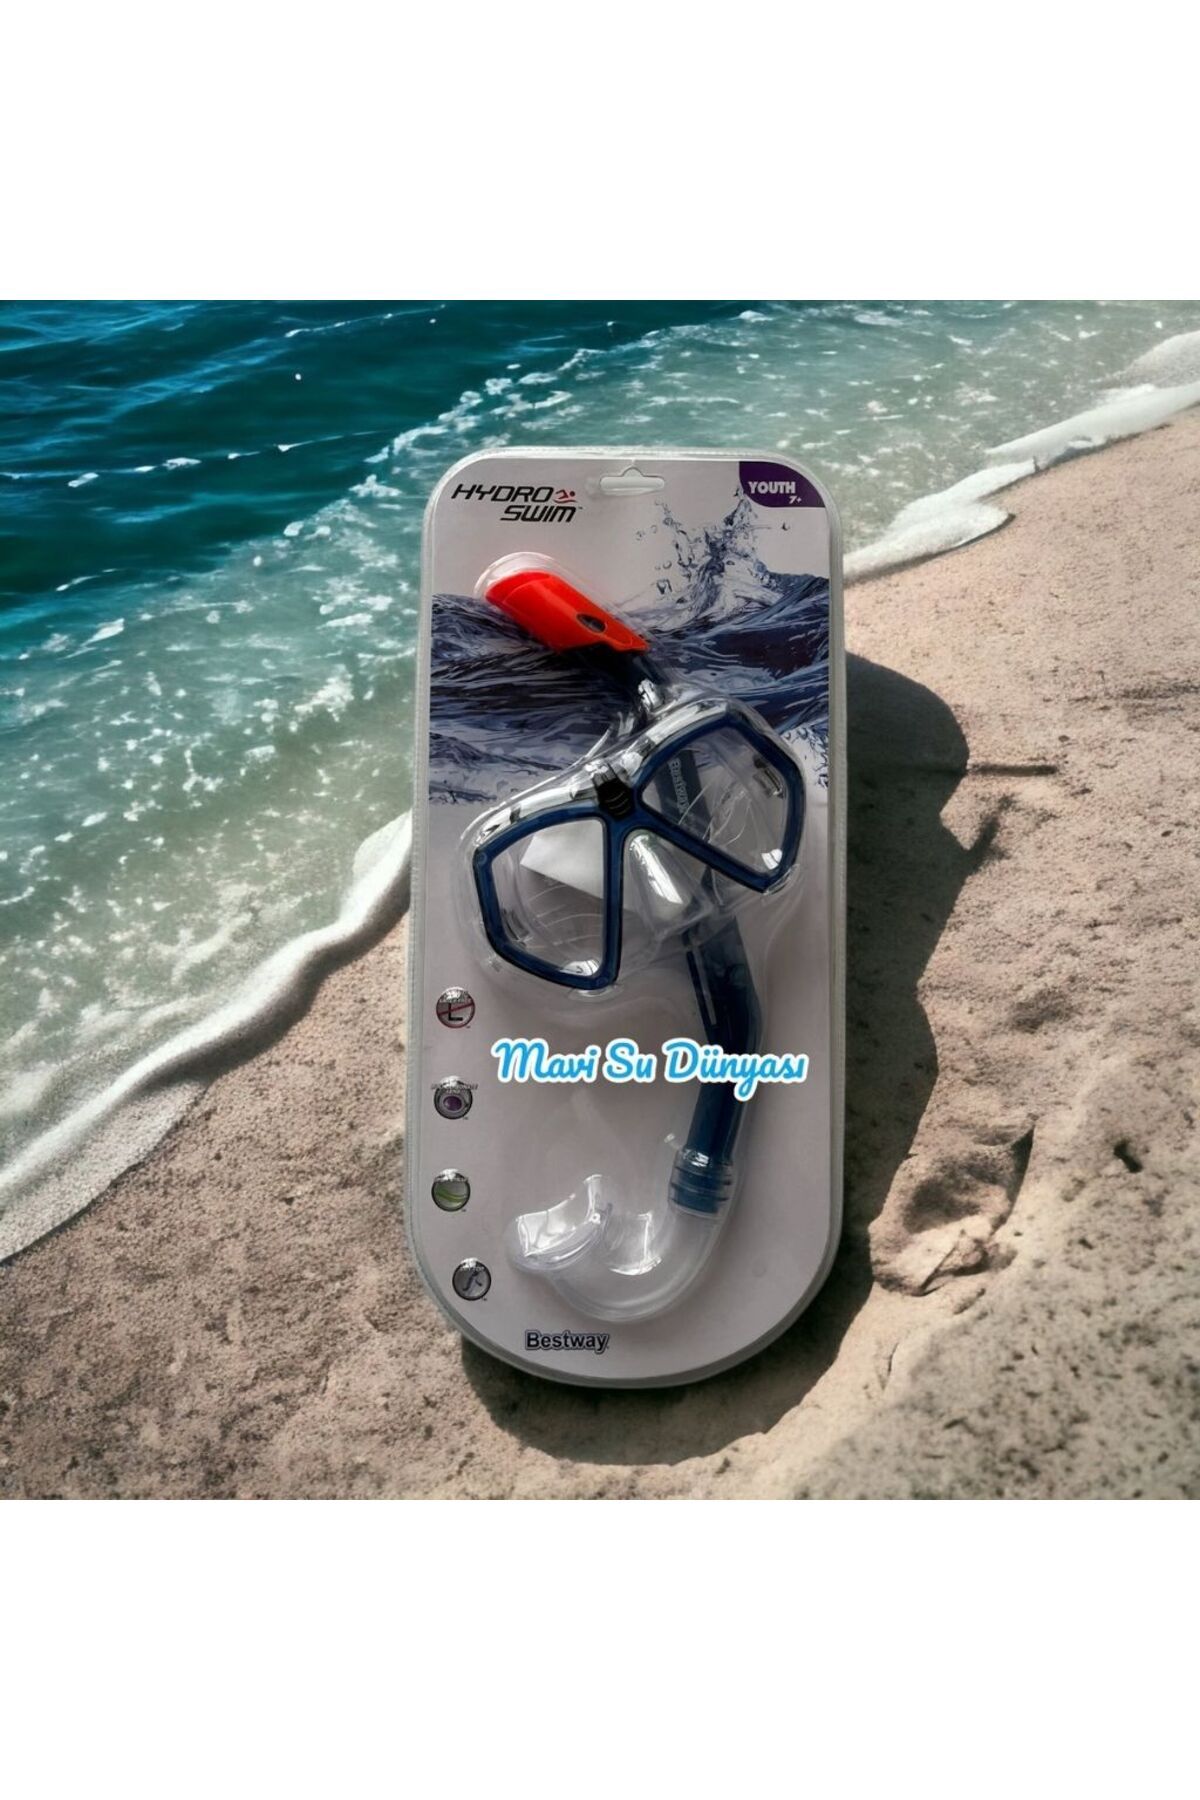 Bestway Hydro Swim Şnorkel Set 7+ 14 Yaş Arası Lacivert Siyah Renk Mavi Su Dünyası